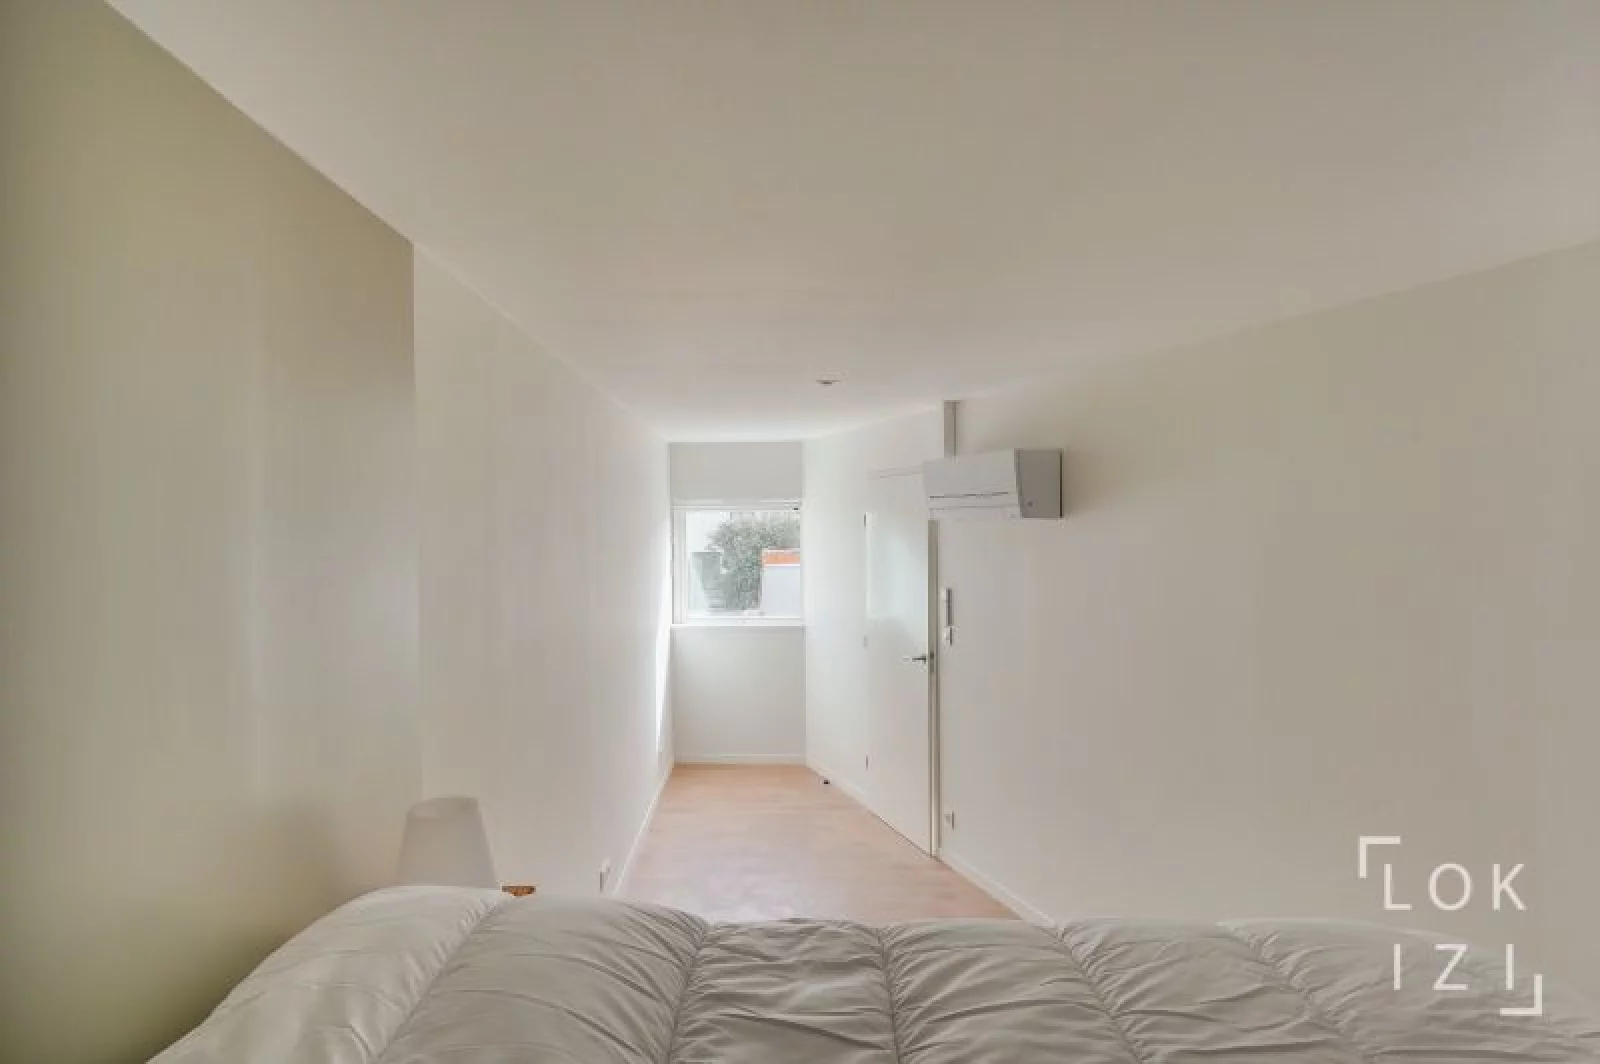 Location appartement meublé 2 pièces 54m² (Bordeaux - St Augustin)